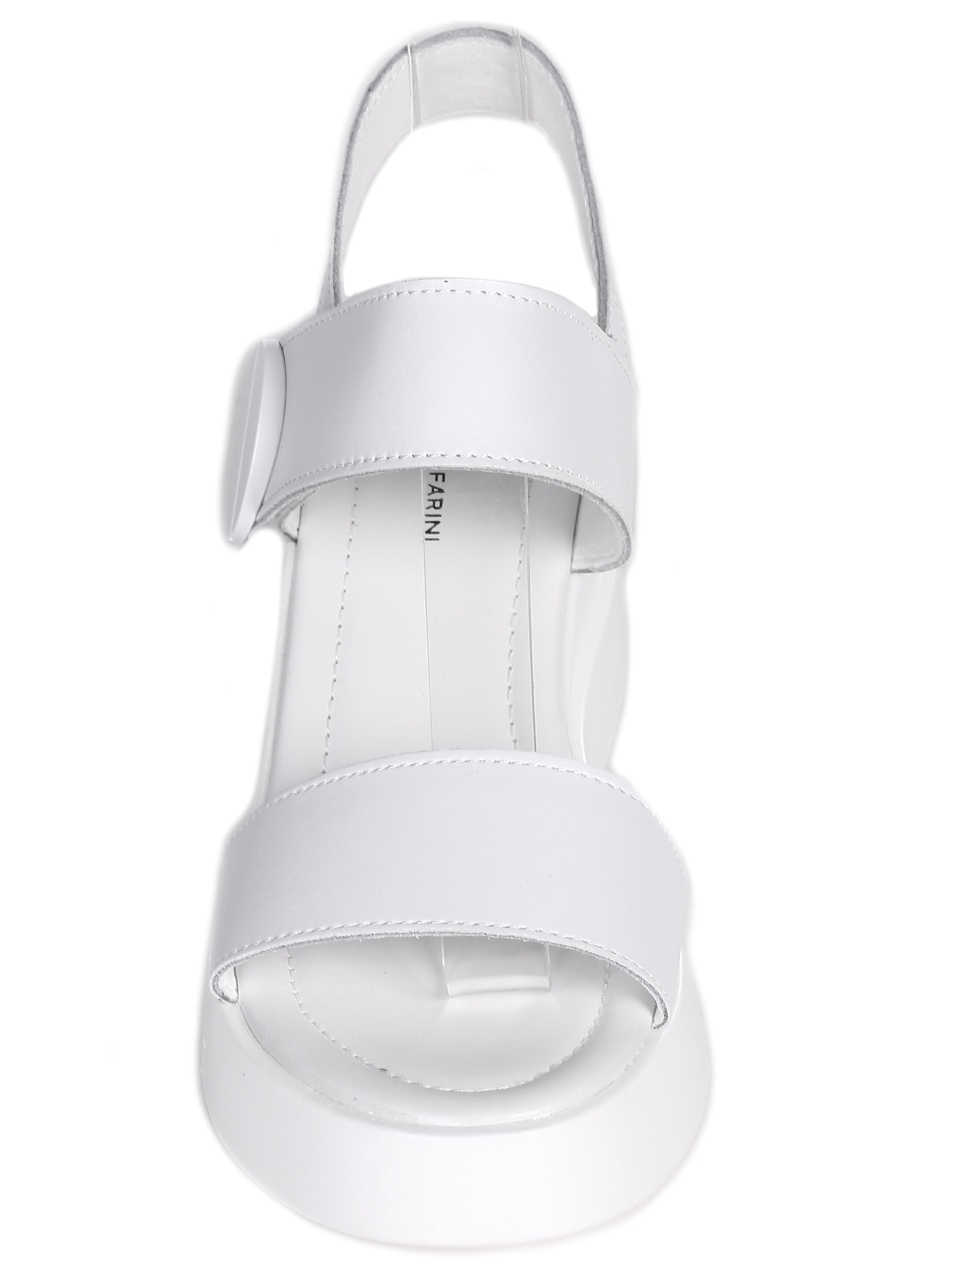 Ежедневни дамски сандали от естествена кожа в бяло 4AF-24147 white(23151)